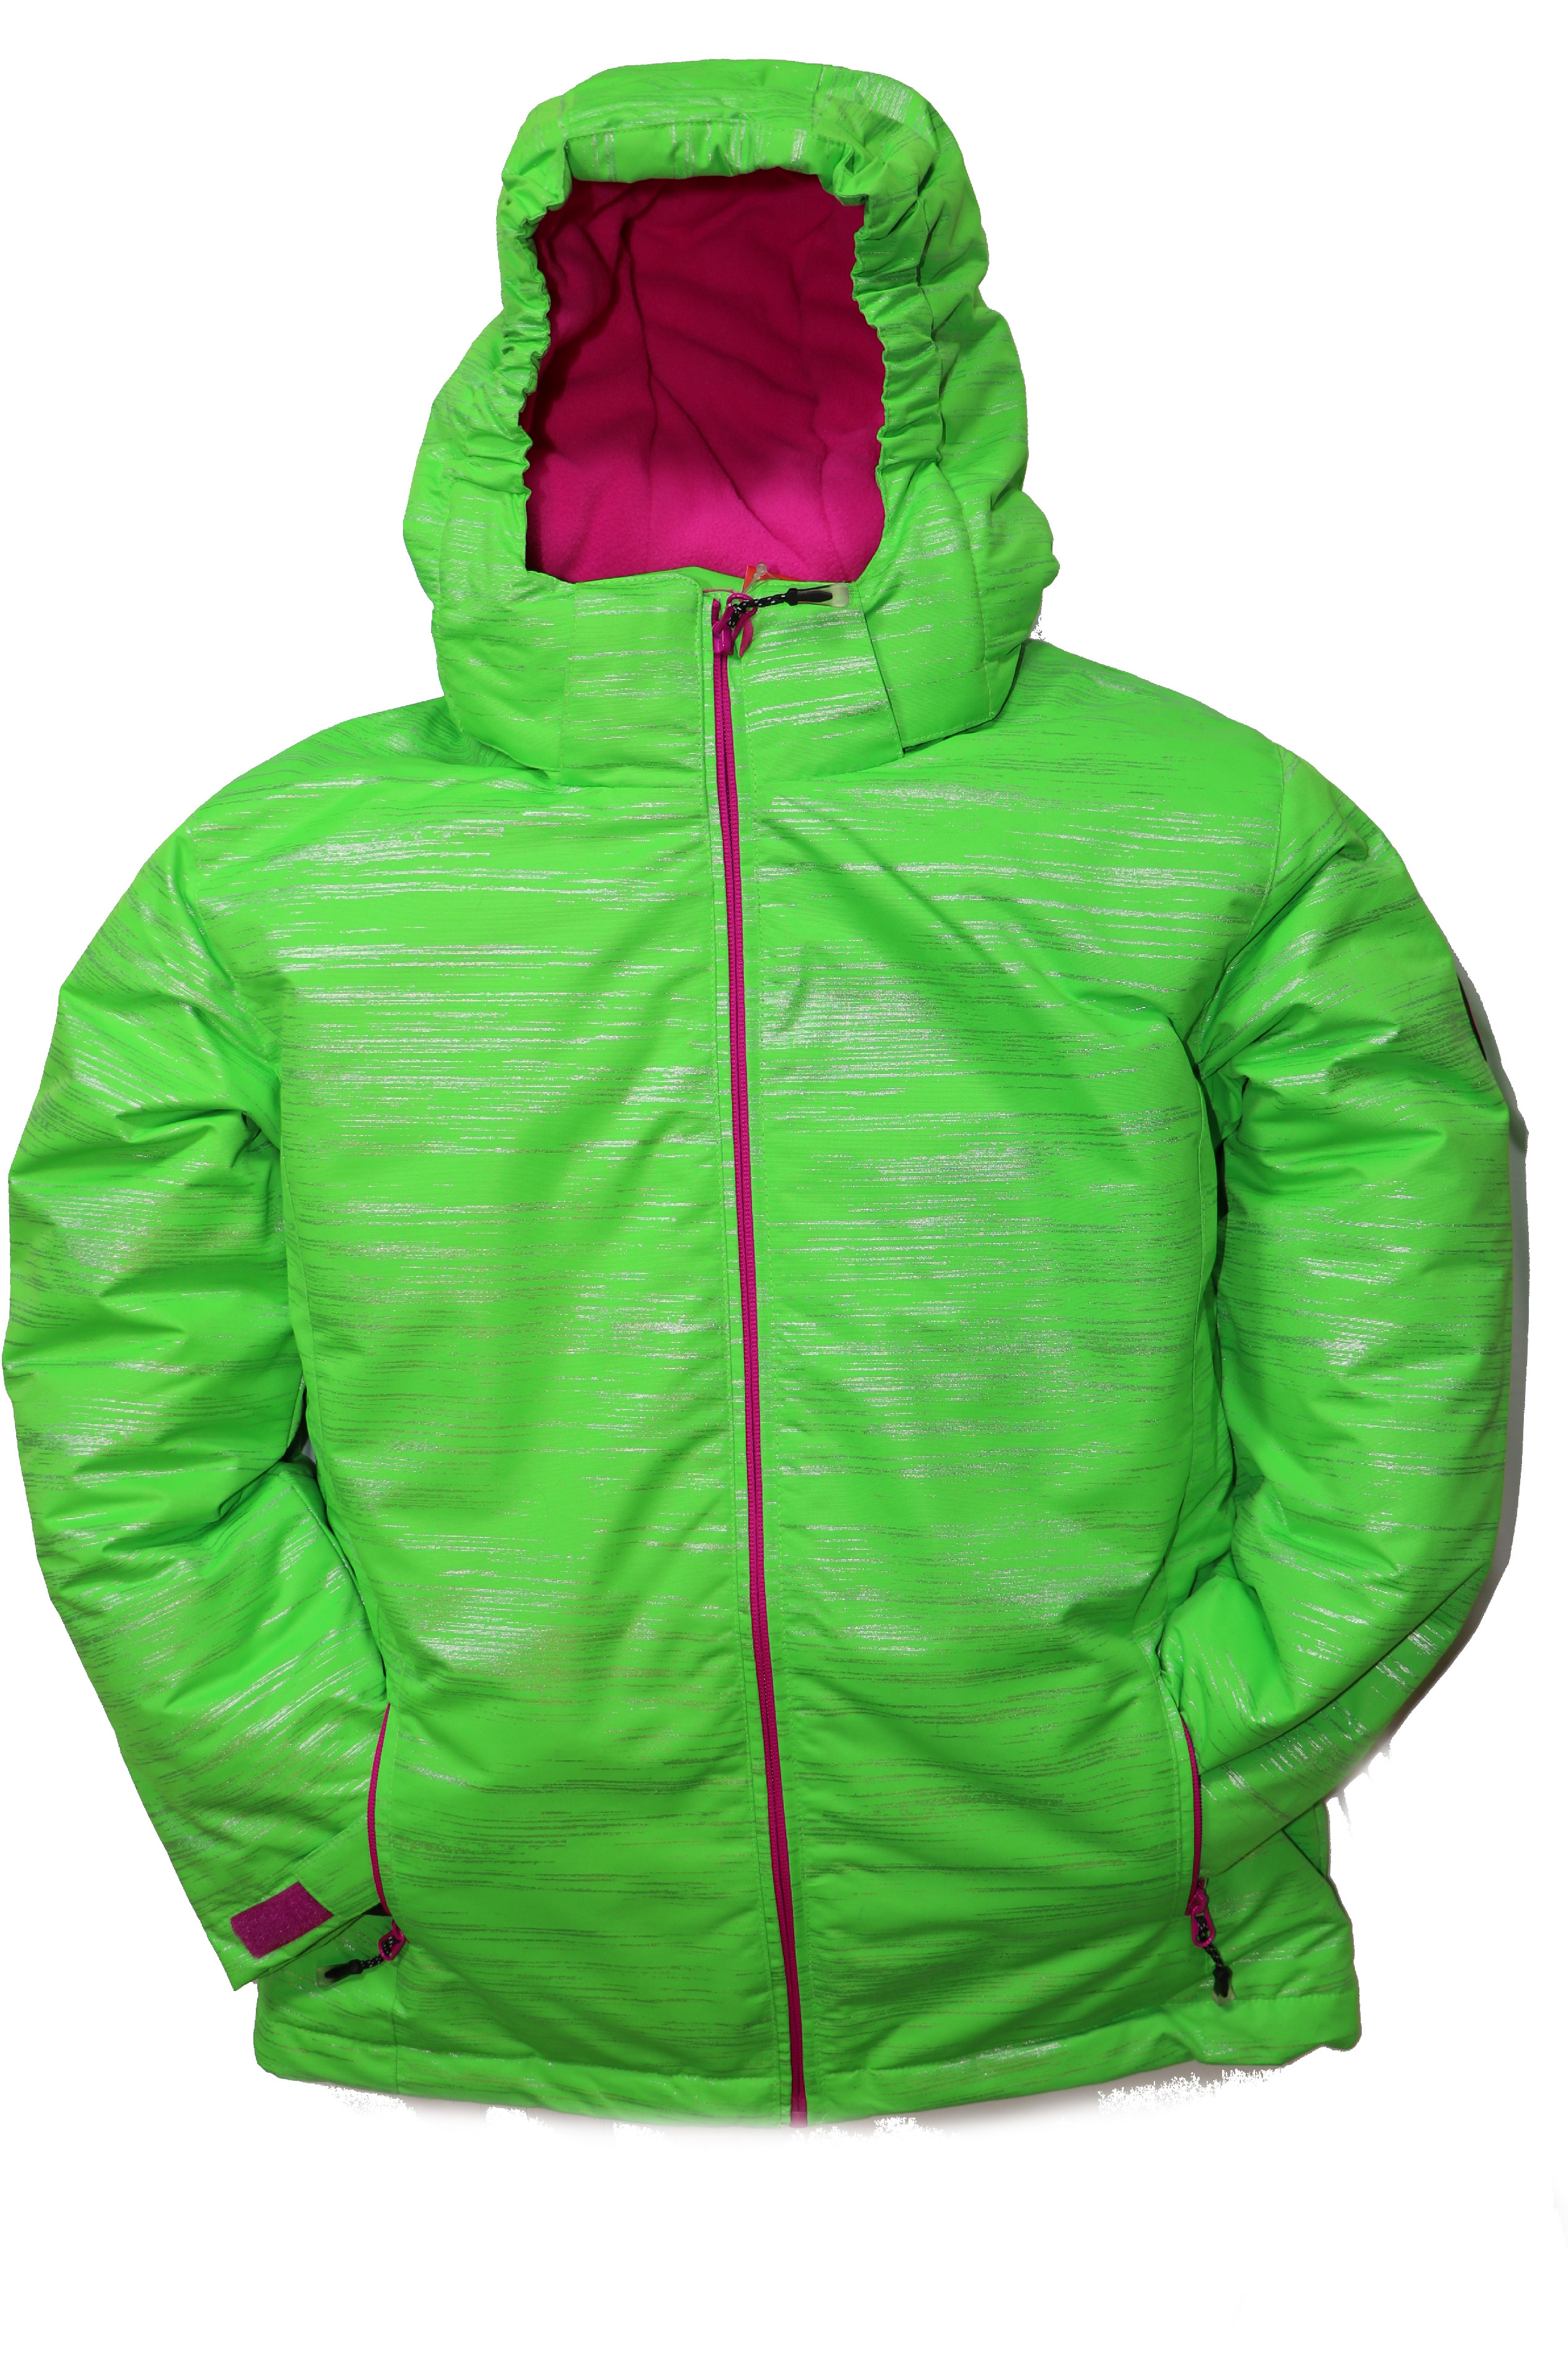 Dětská zimní bunda volného střihu HA04-M2 zelená vel. 134-164 cm Barva: Zelená, Velikost: 152 - 158 cm